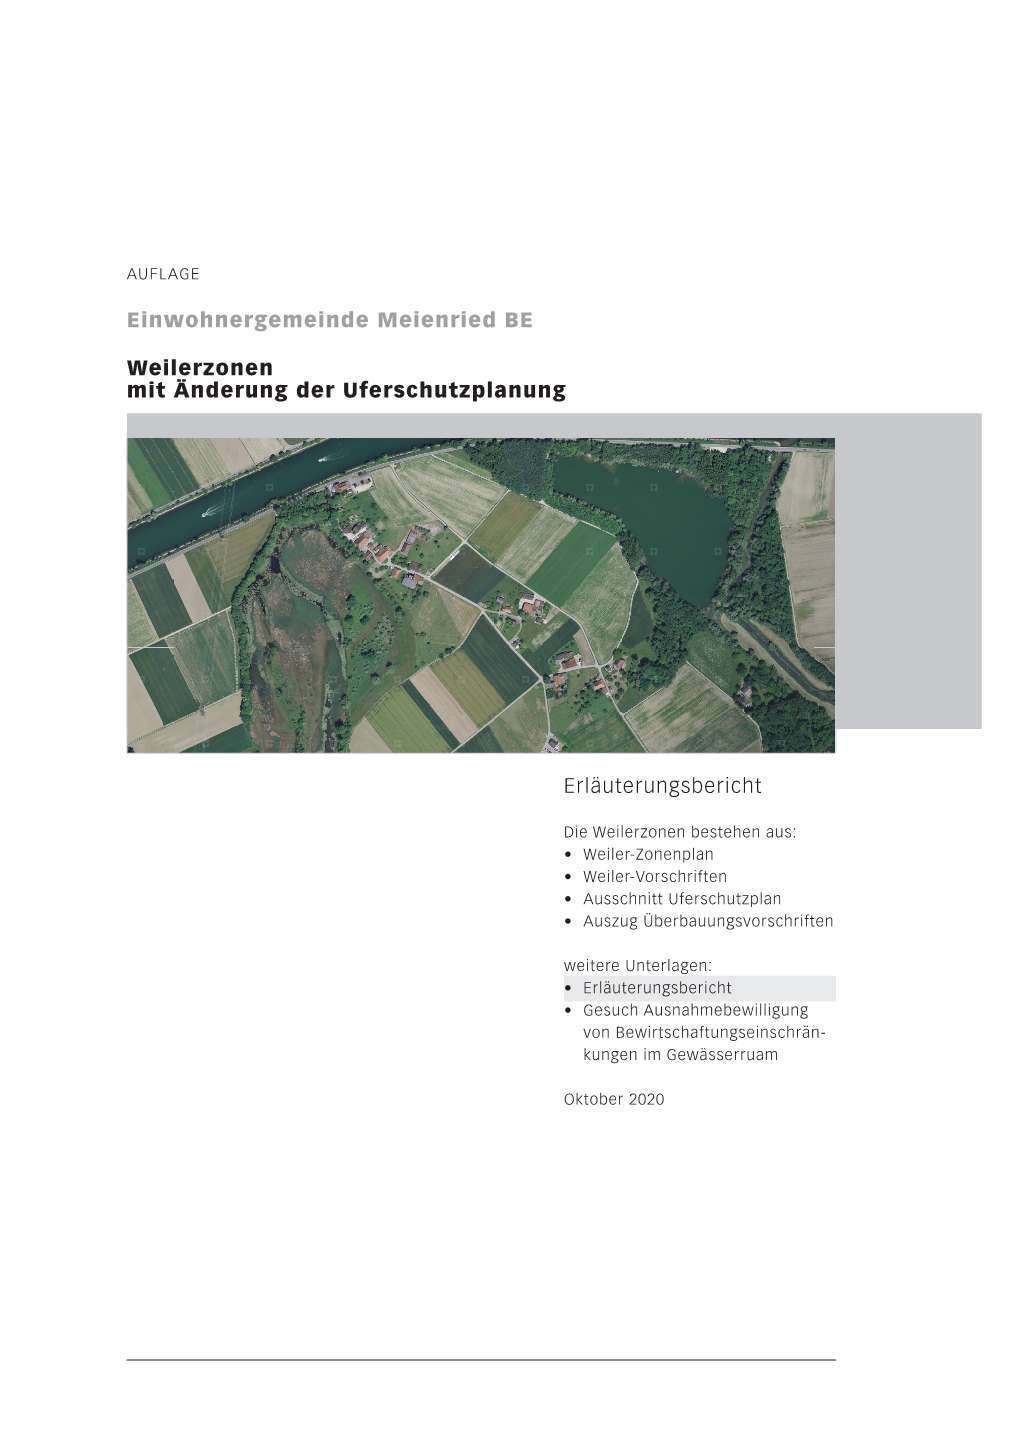 Erläuterungsbericht Einwohnergemeinde Meienried BE